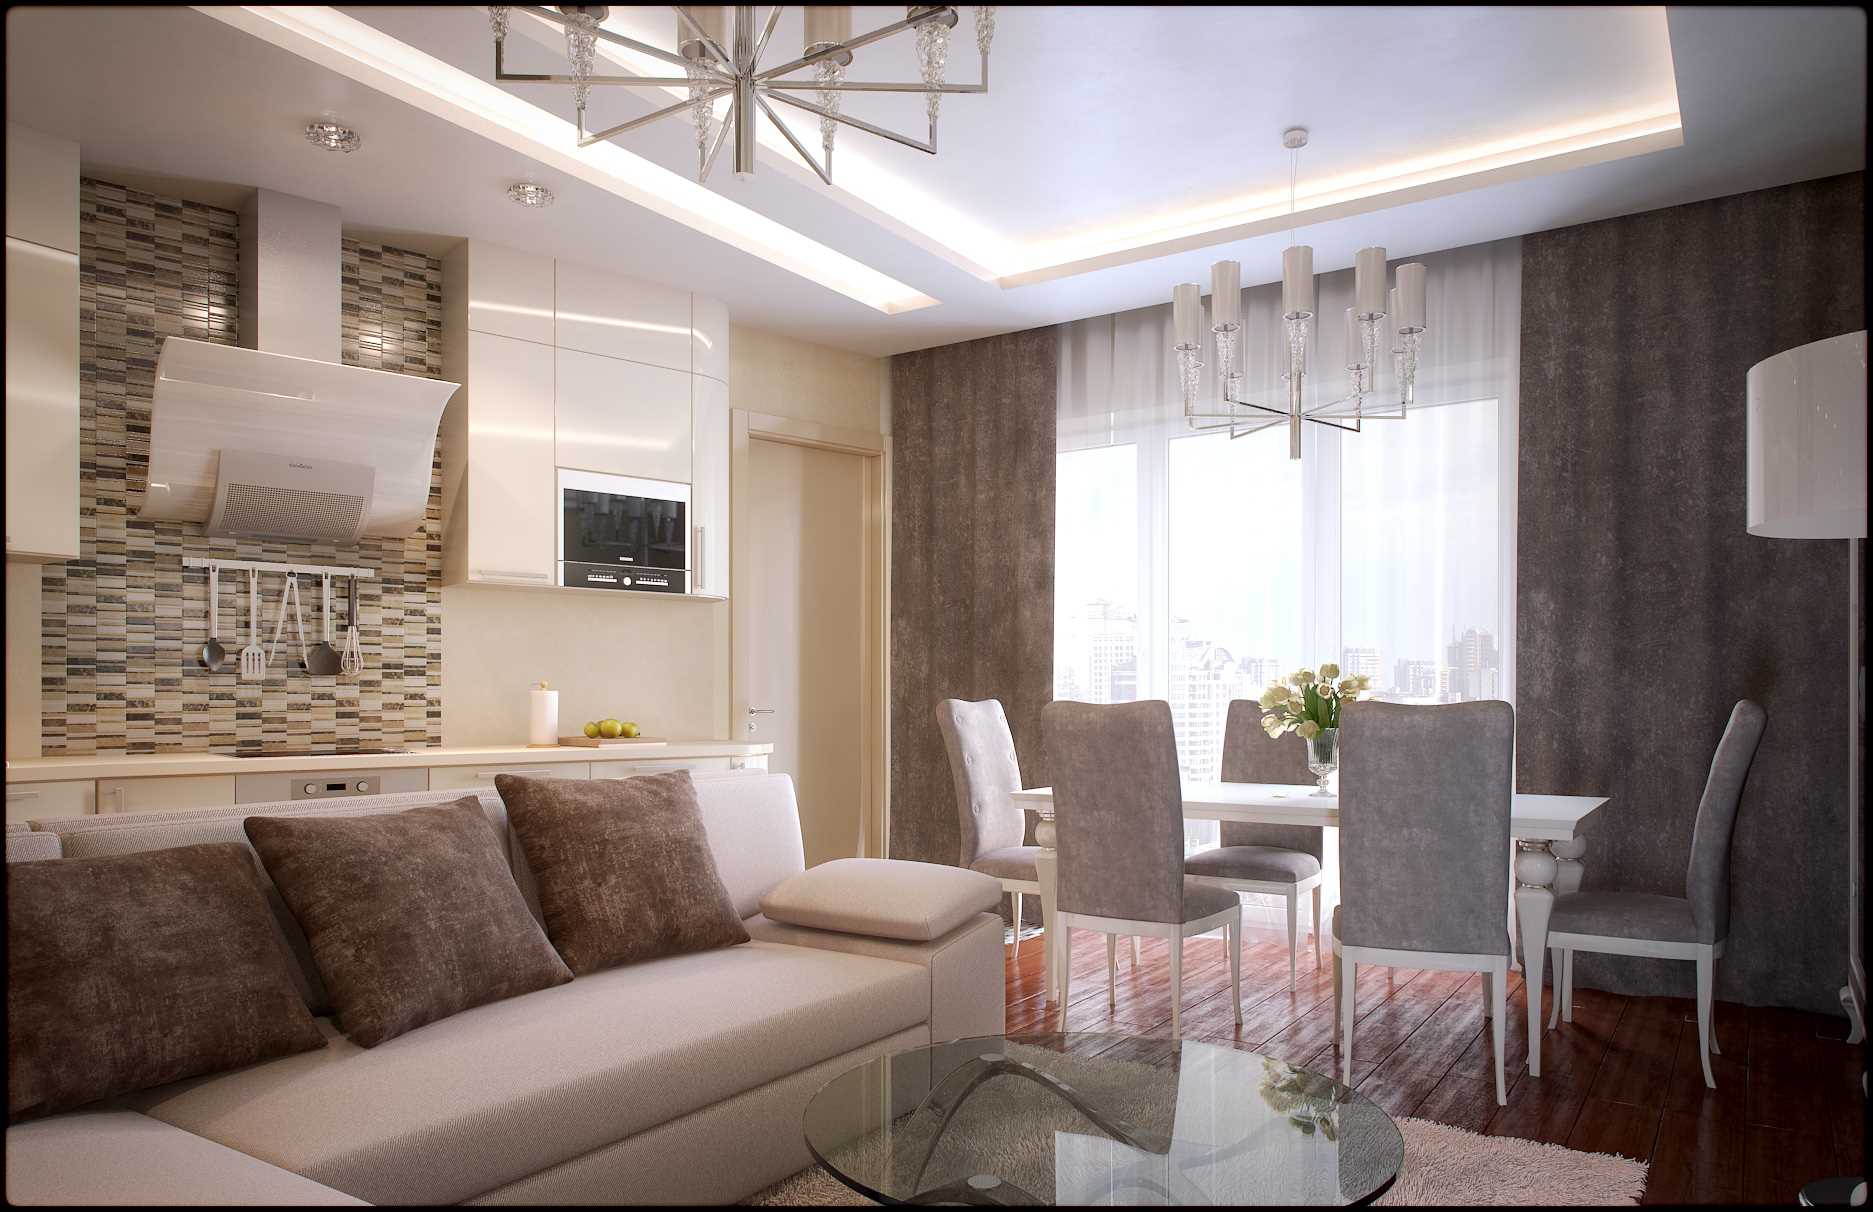 versione degli splendidi interni del soggiorno in stile moderno